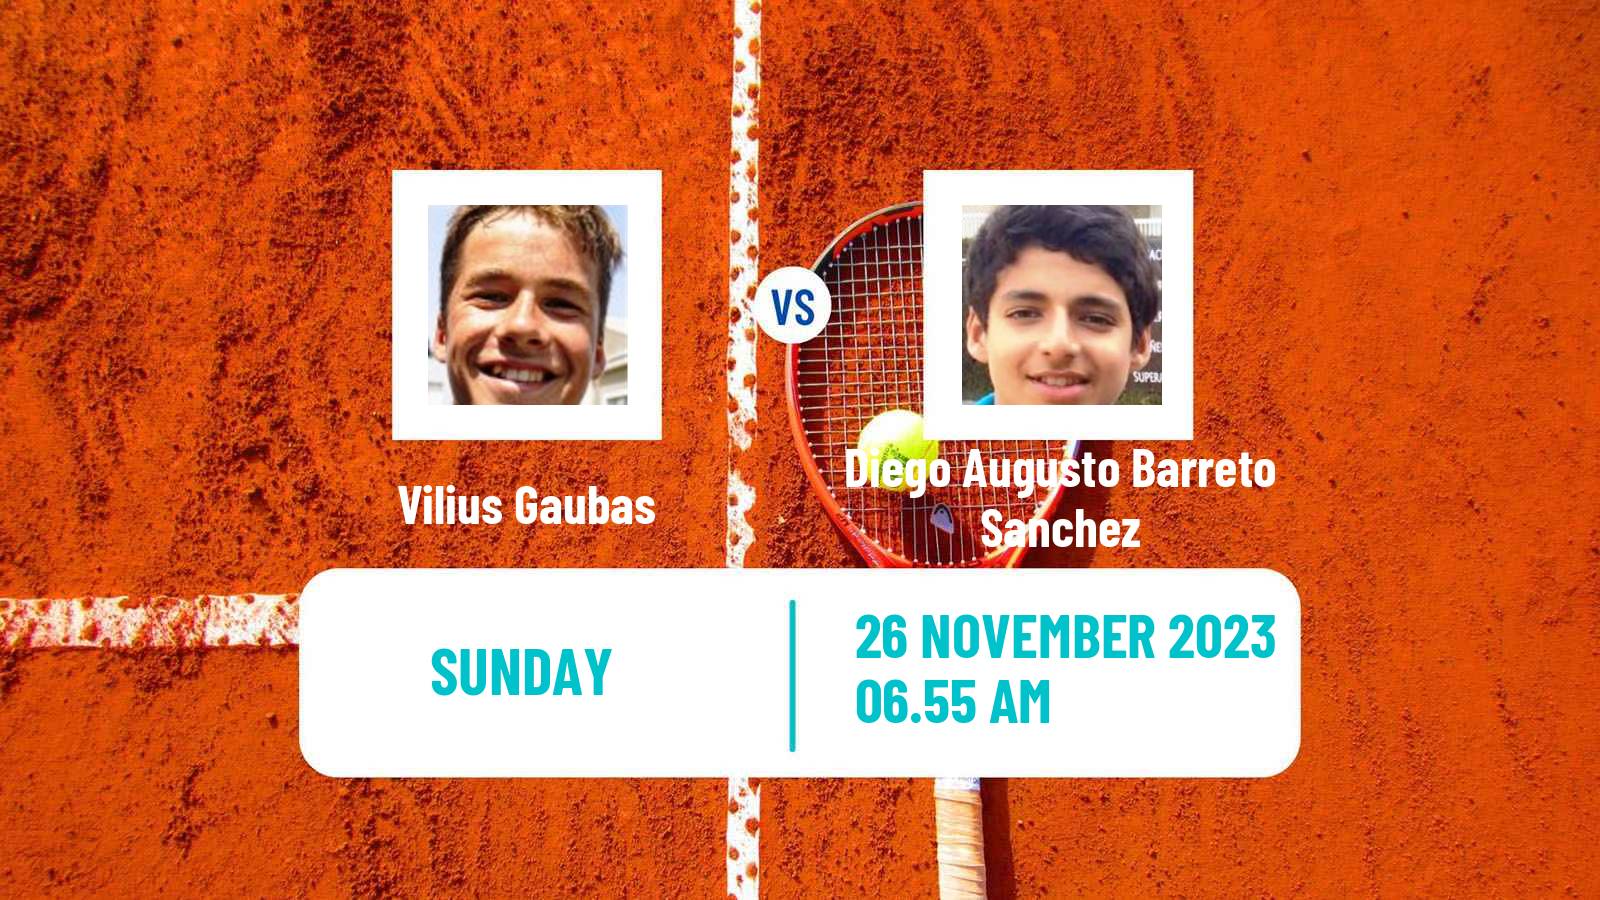 Tennis Maspalomas Challenger Men Vilius Gaubas - Diego Augusto Barreto Sanchez